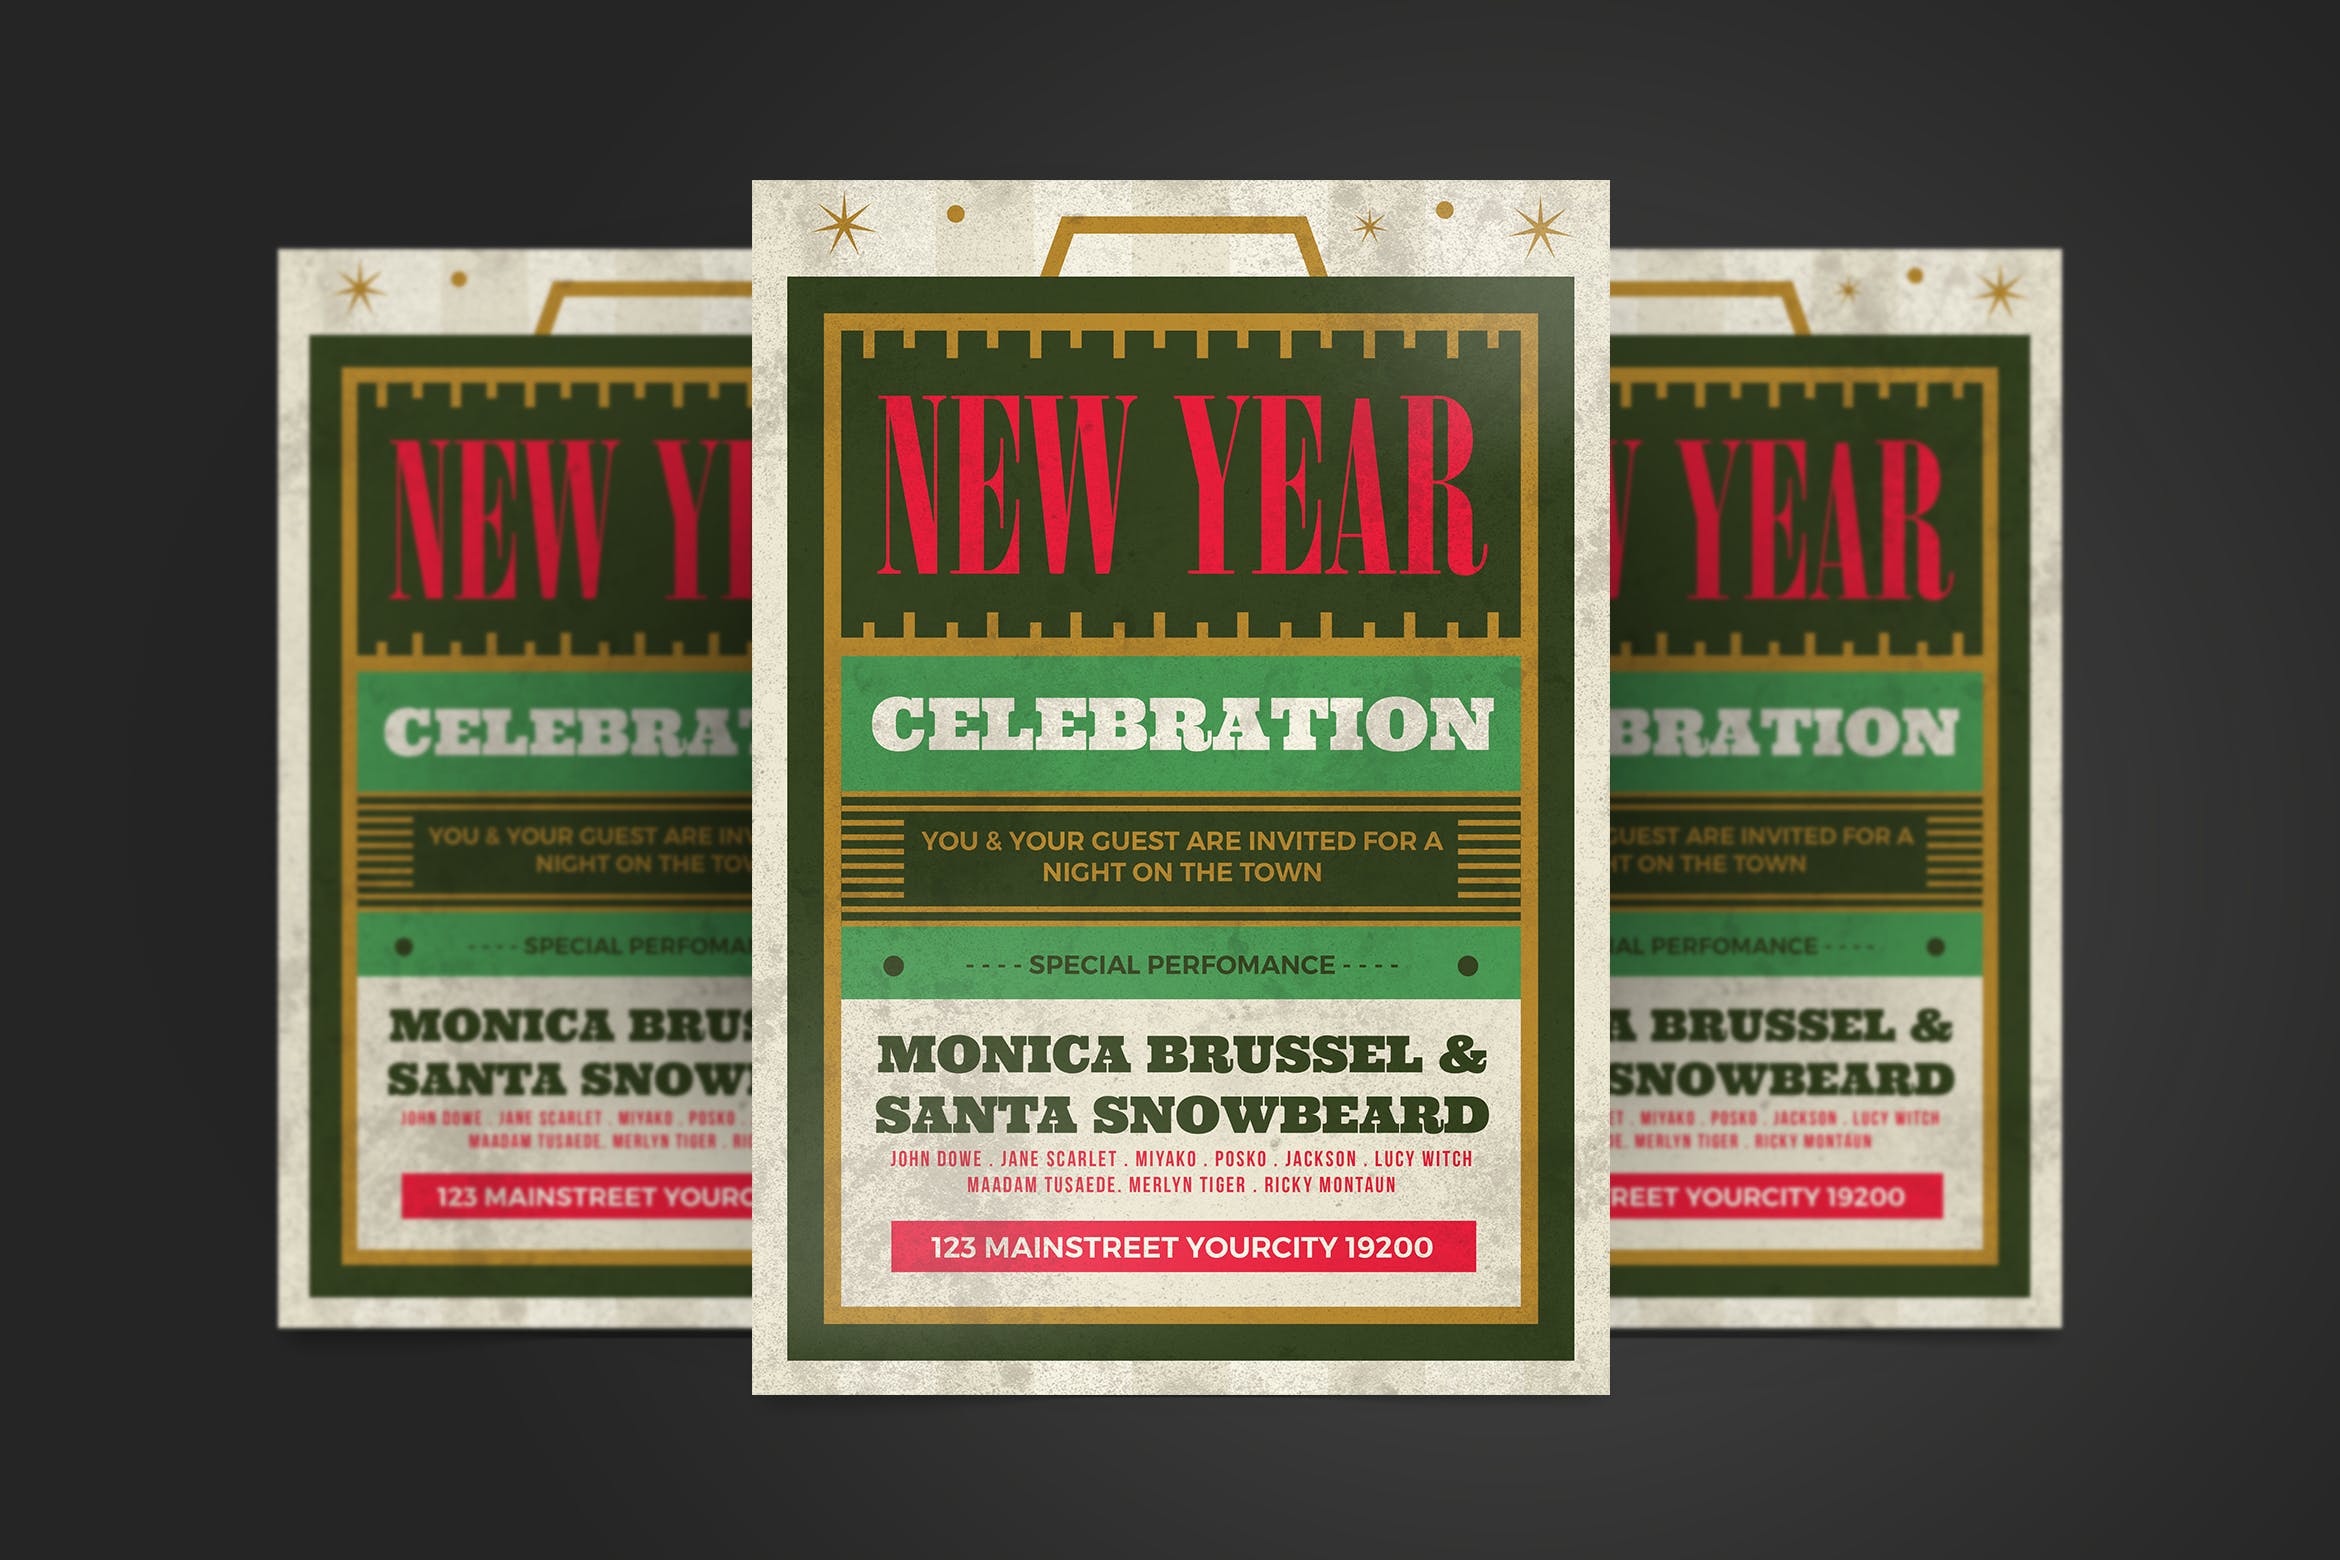 复古排版设计风格新年主题活动海报传单素材库精选PSD模板 New Year Flyer插图